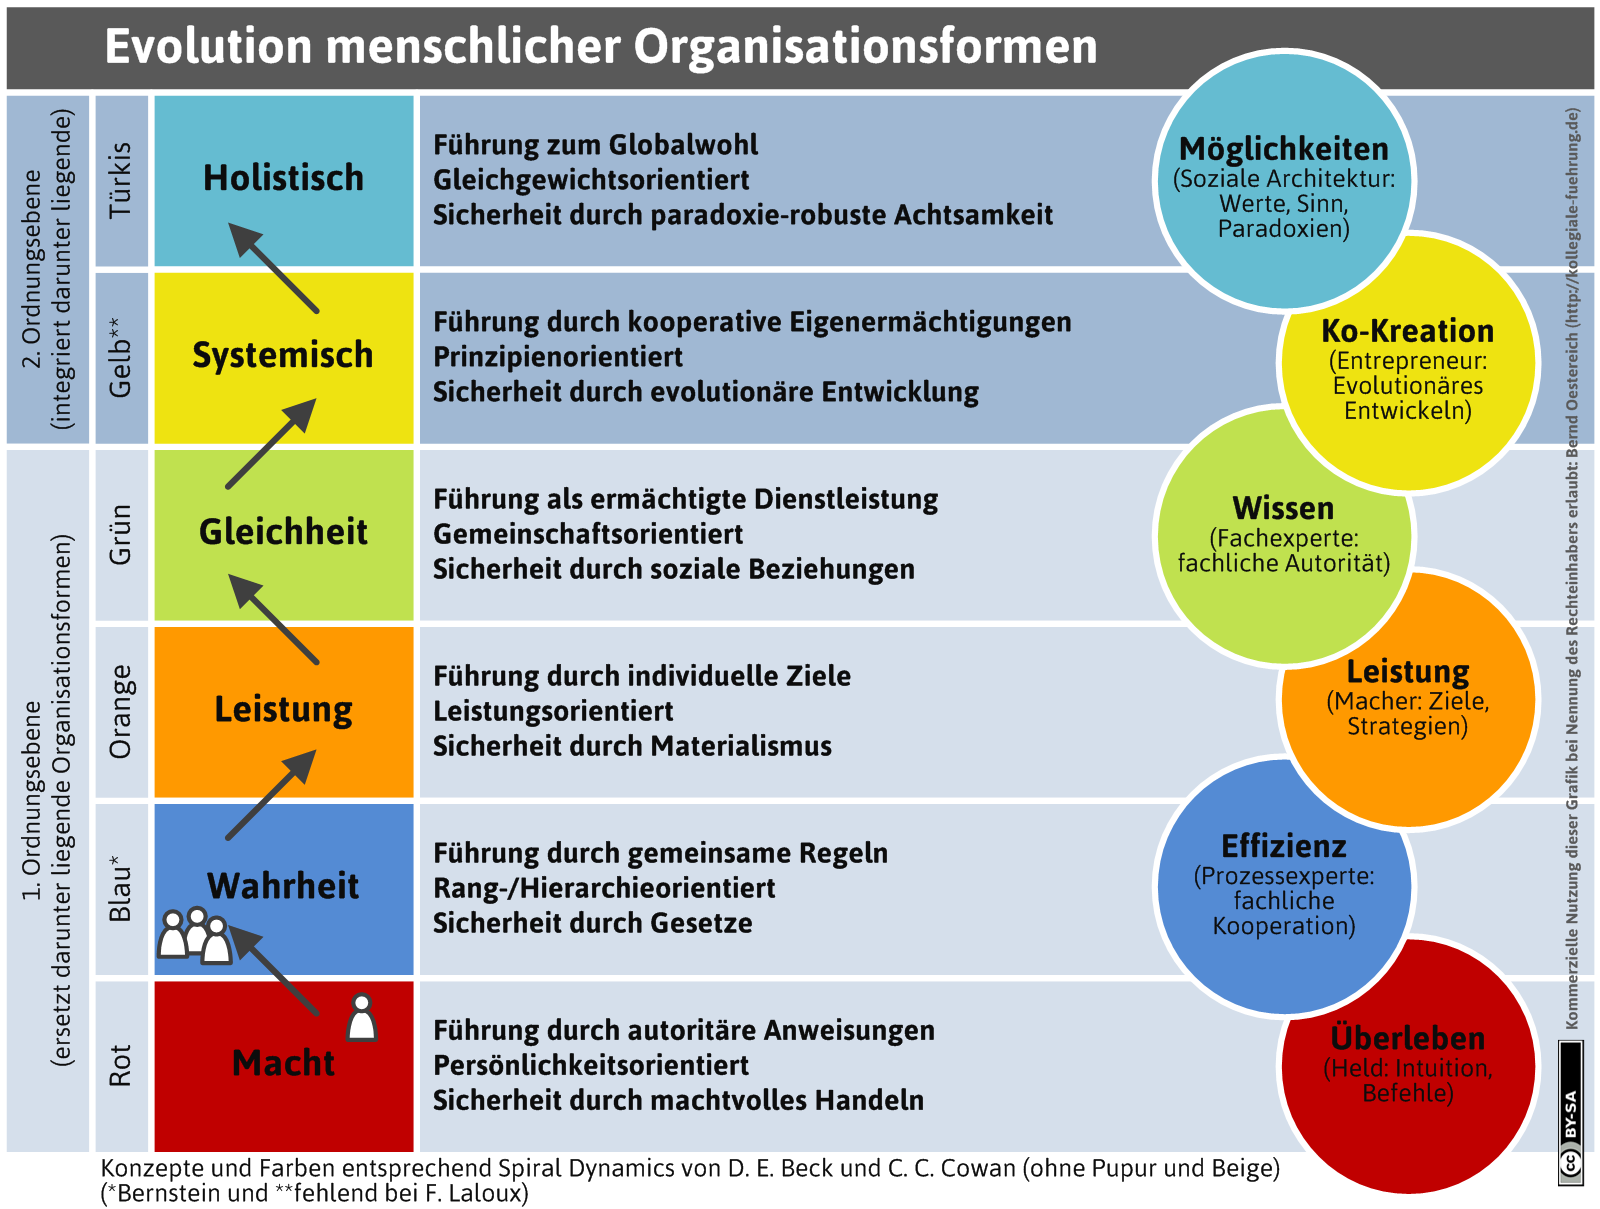 mdl_evolution-organisationsformen-png